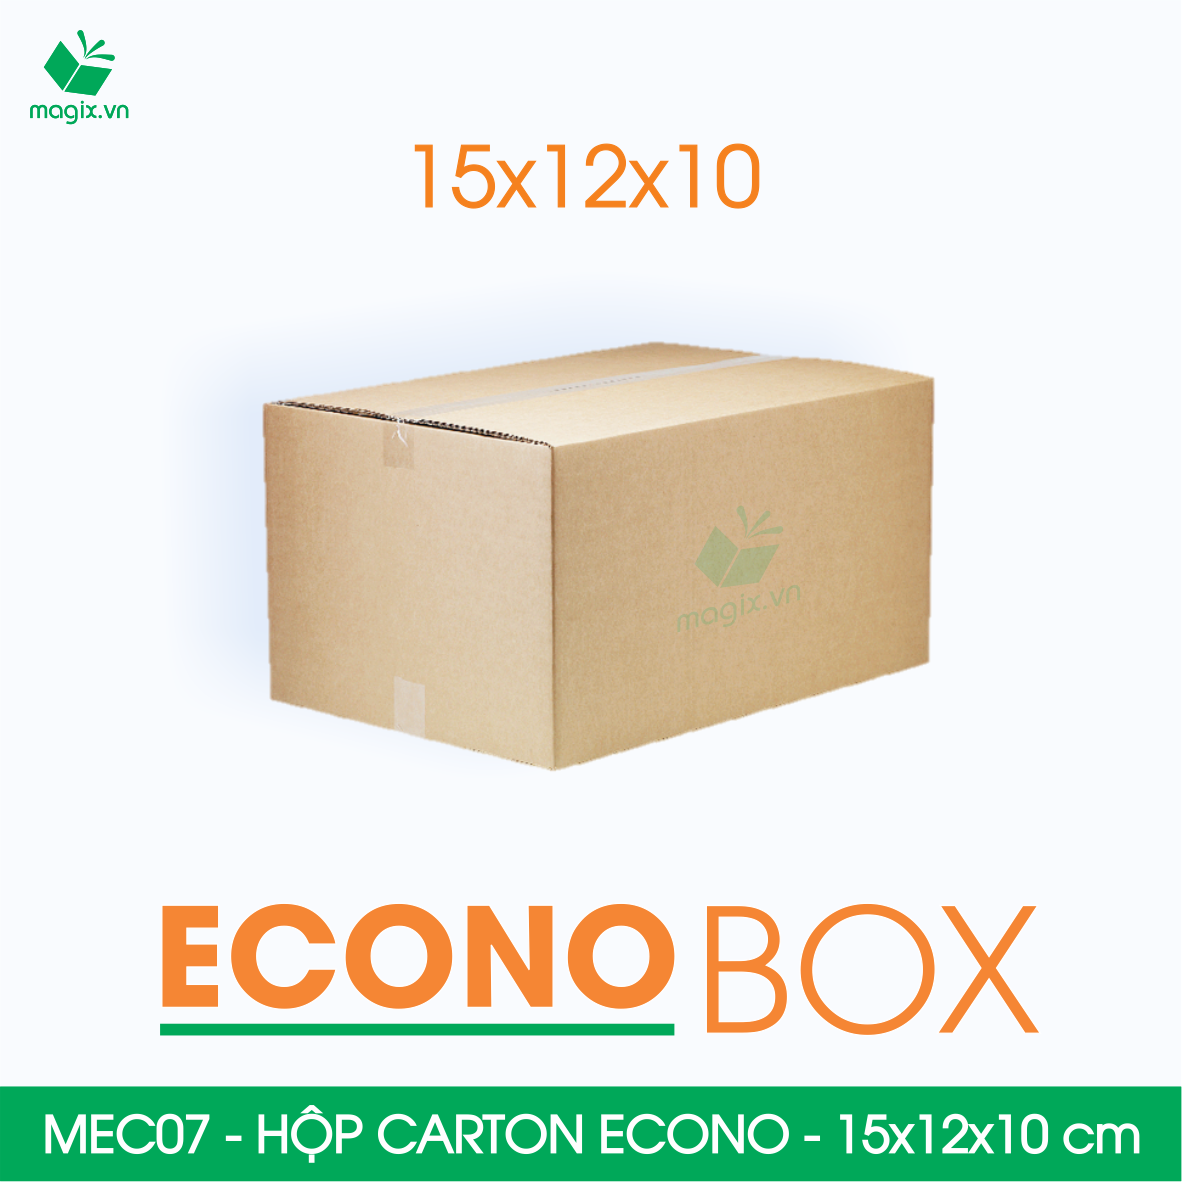 Hình ảnh MEC07 - 15x12x10 cm - Combo 60 thùng hộp carton trơn siêu tiết kiệm ECONO